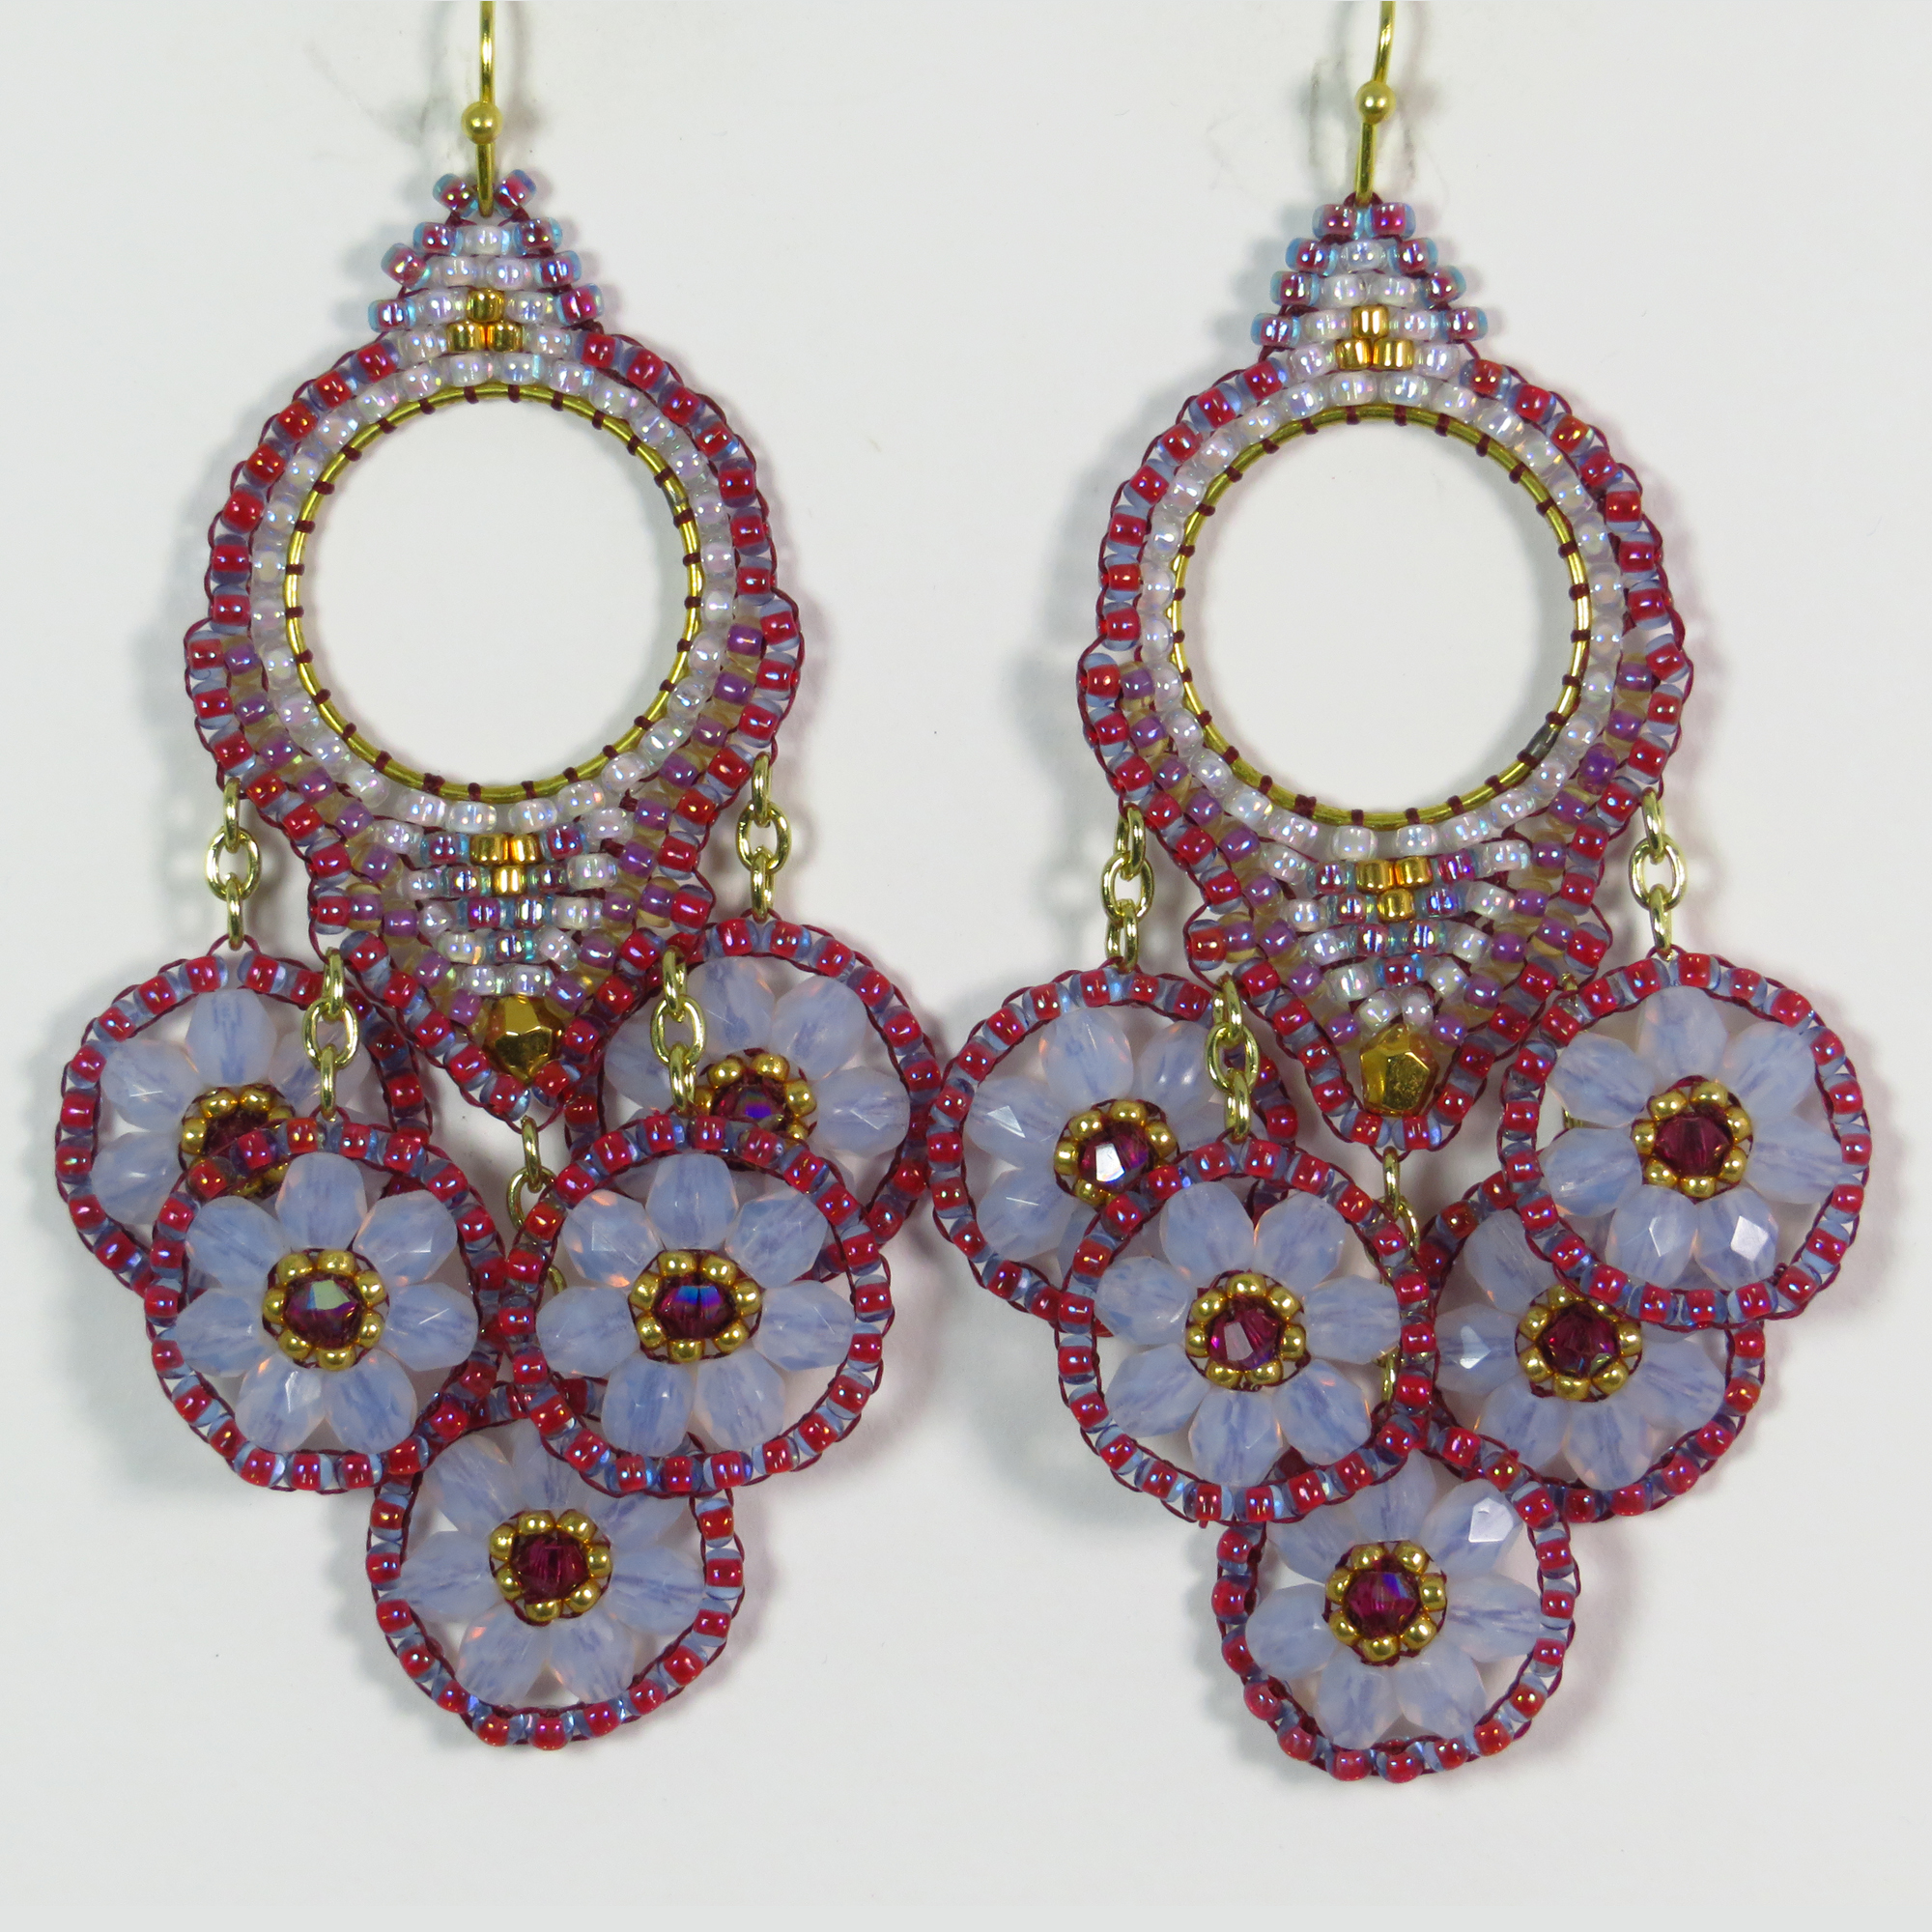 Lavender beaded chandelier dangle earrings by Bonnie Van Hall